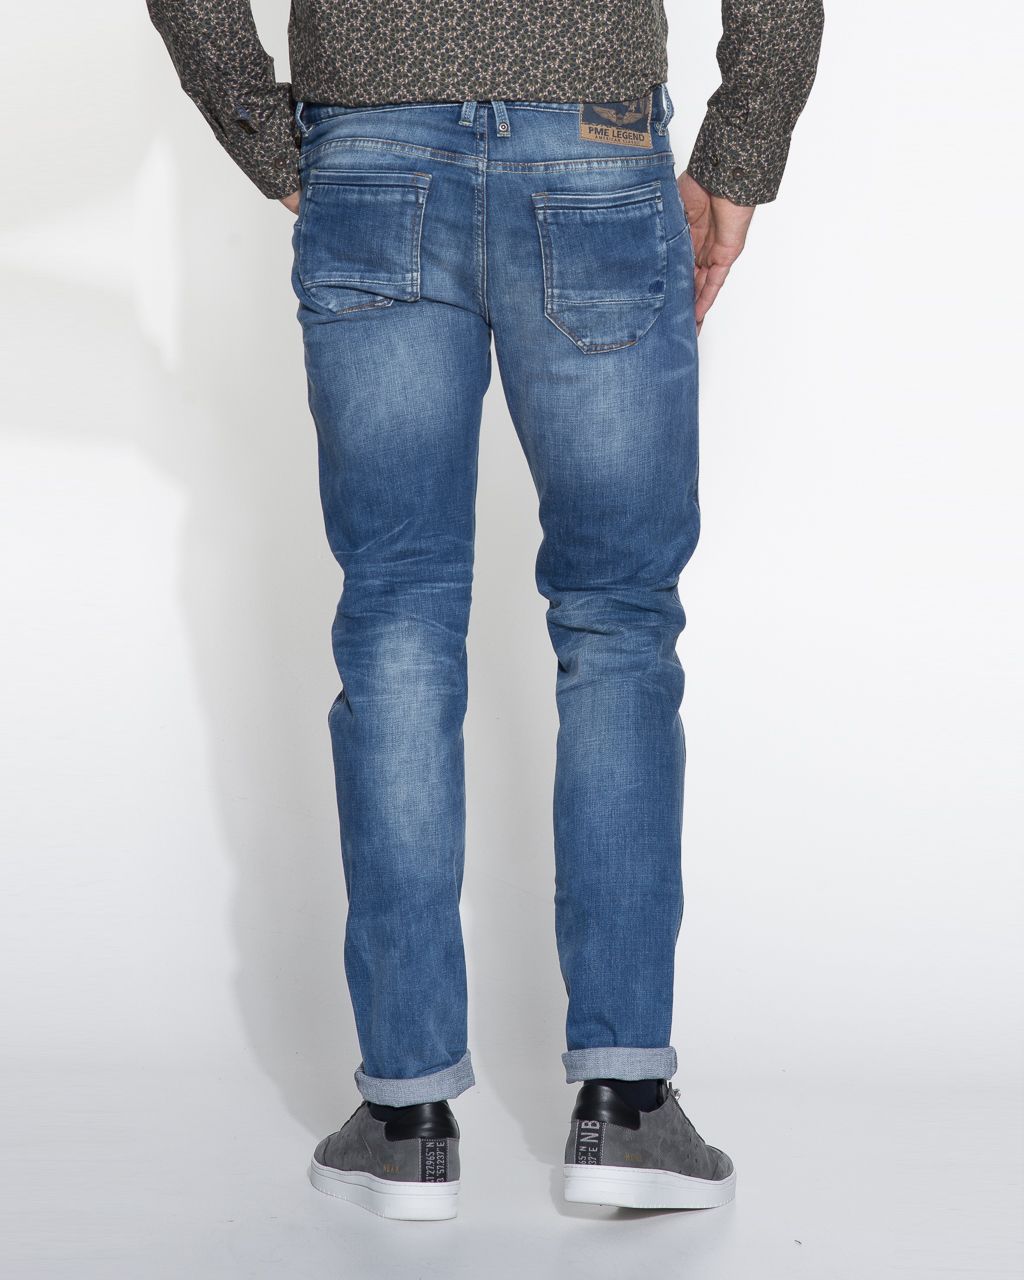 PME Legend Nightflight Jeans | Shop nu - Only for Men